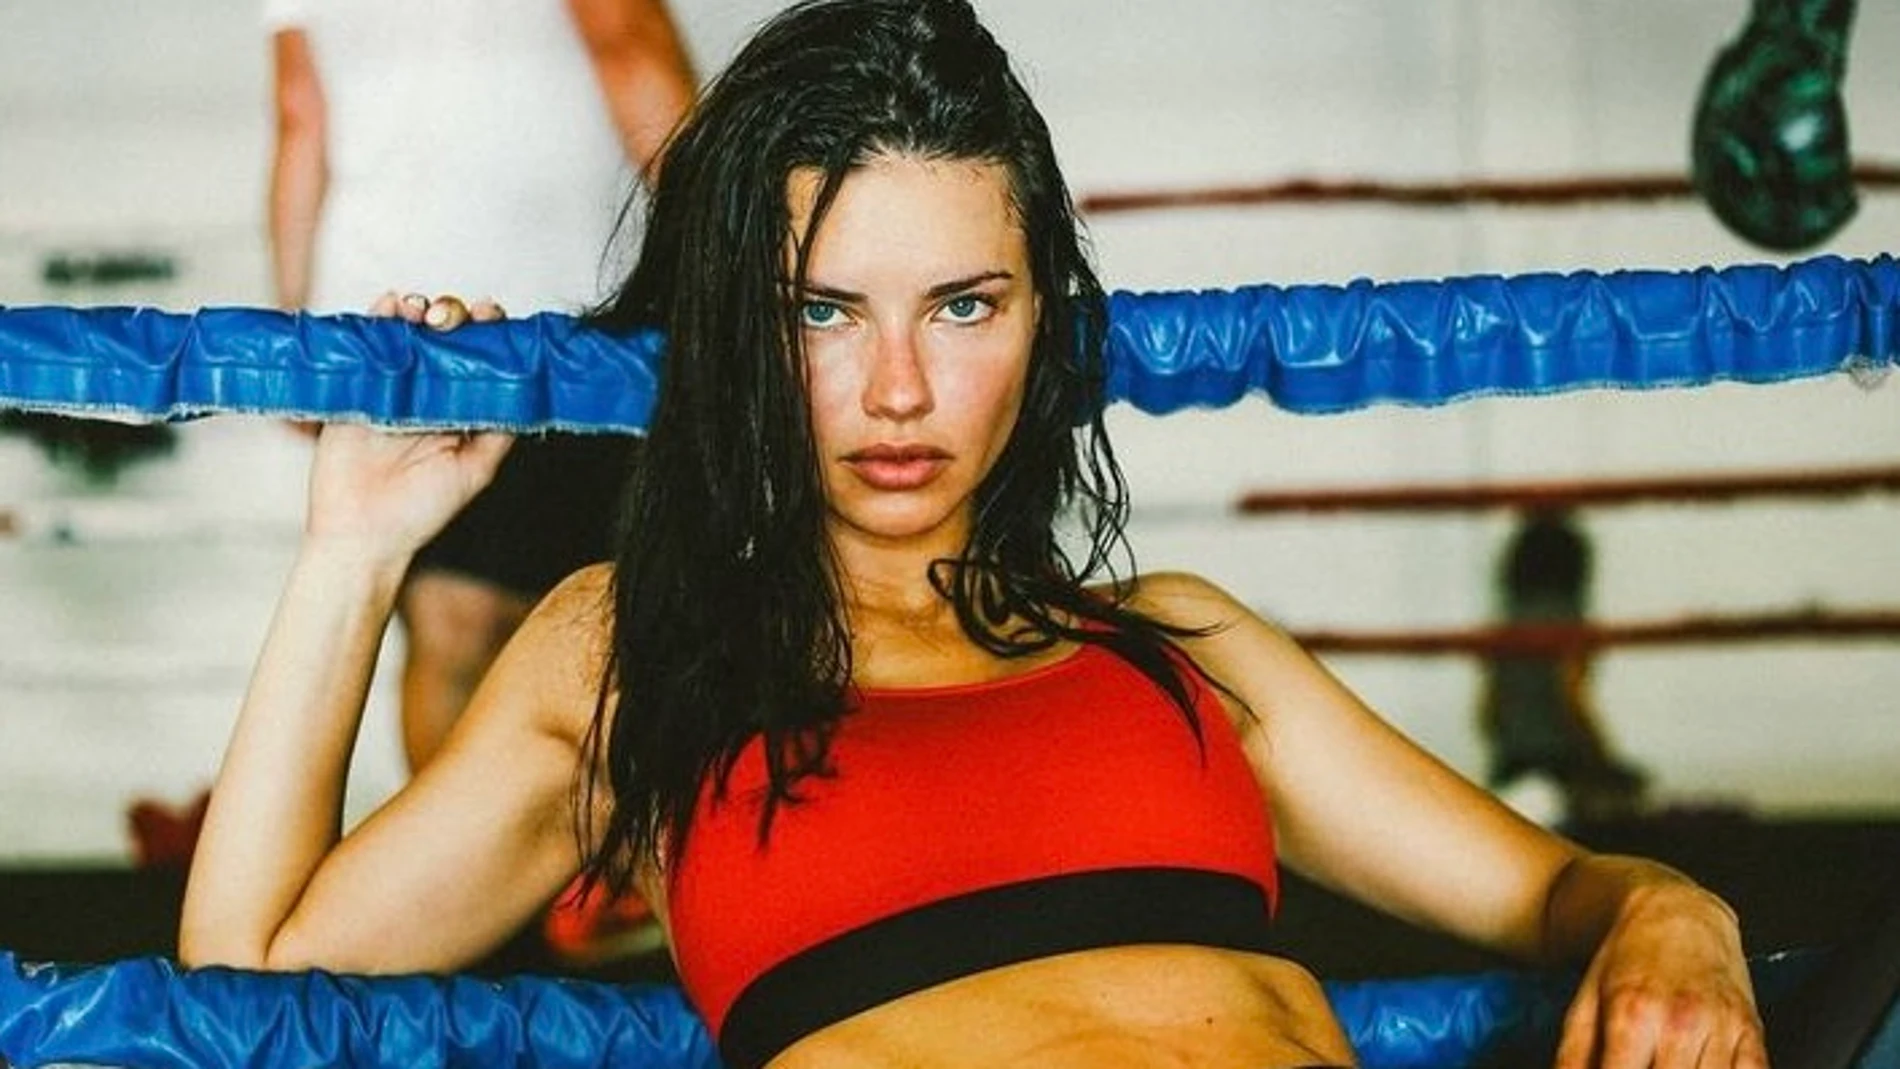 La modelo Adriana Lima practicando boxeo